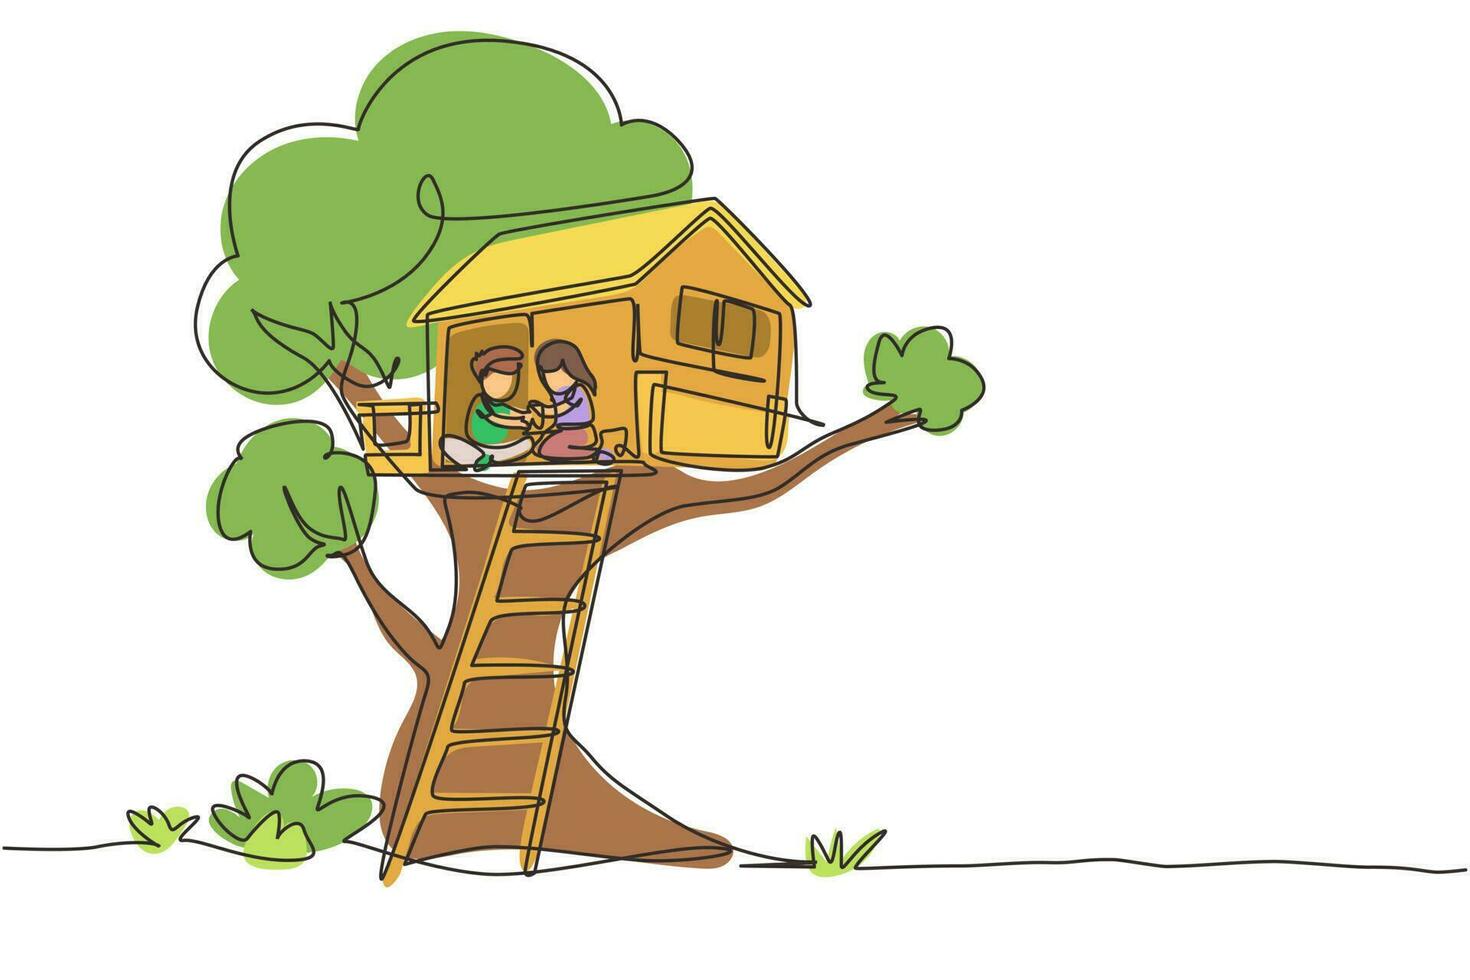 criança de desenho de linha contínua única na casa da árvore, menino e menina brincando no parque infantil, casa na árvore com escada de madeira, lugar para jogos infantis no verão. vetor de design gráfico de uma linha